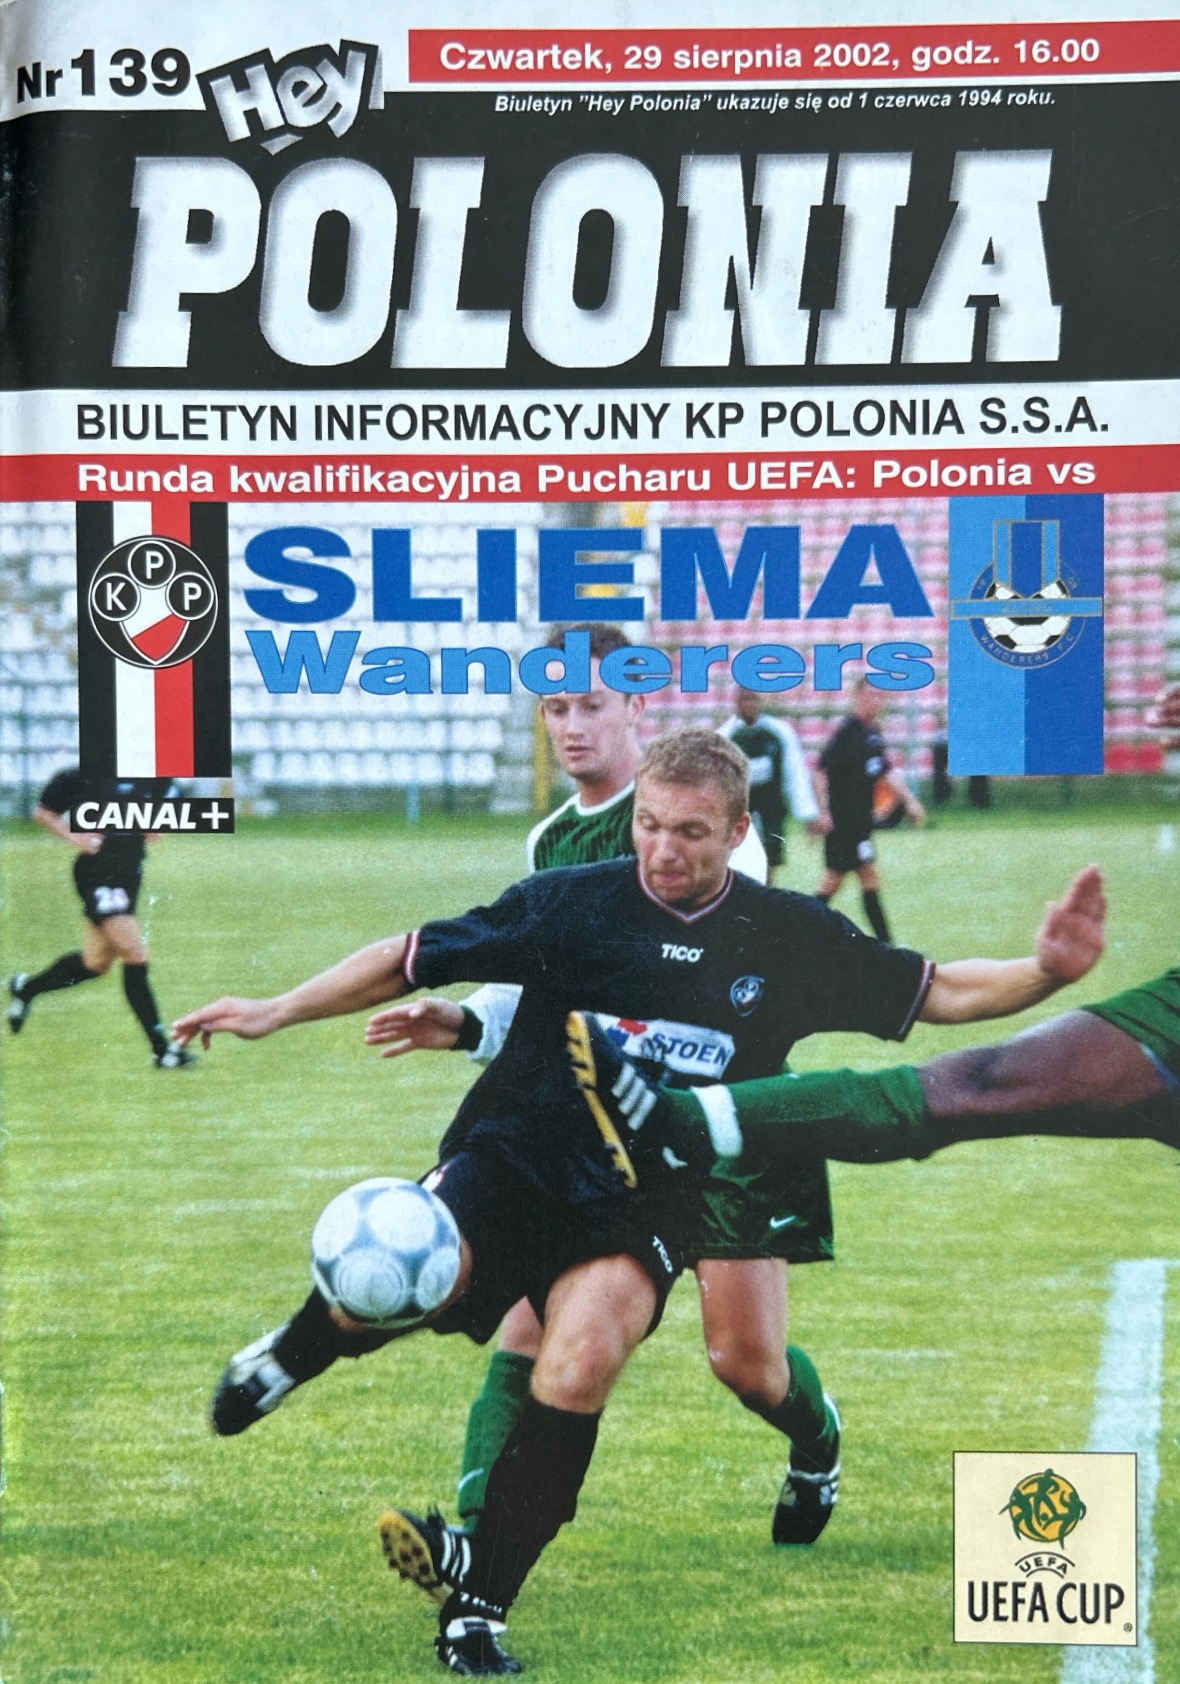 Program meczowy Polonia Warszawa - Sliema Wanderers 2:0 (29.08.2002)